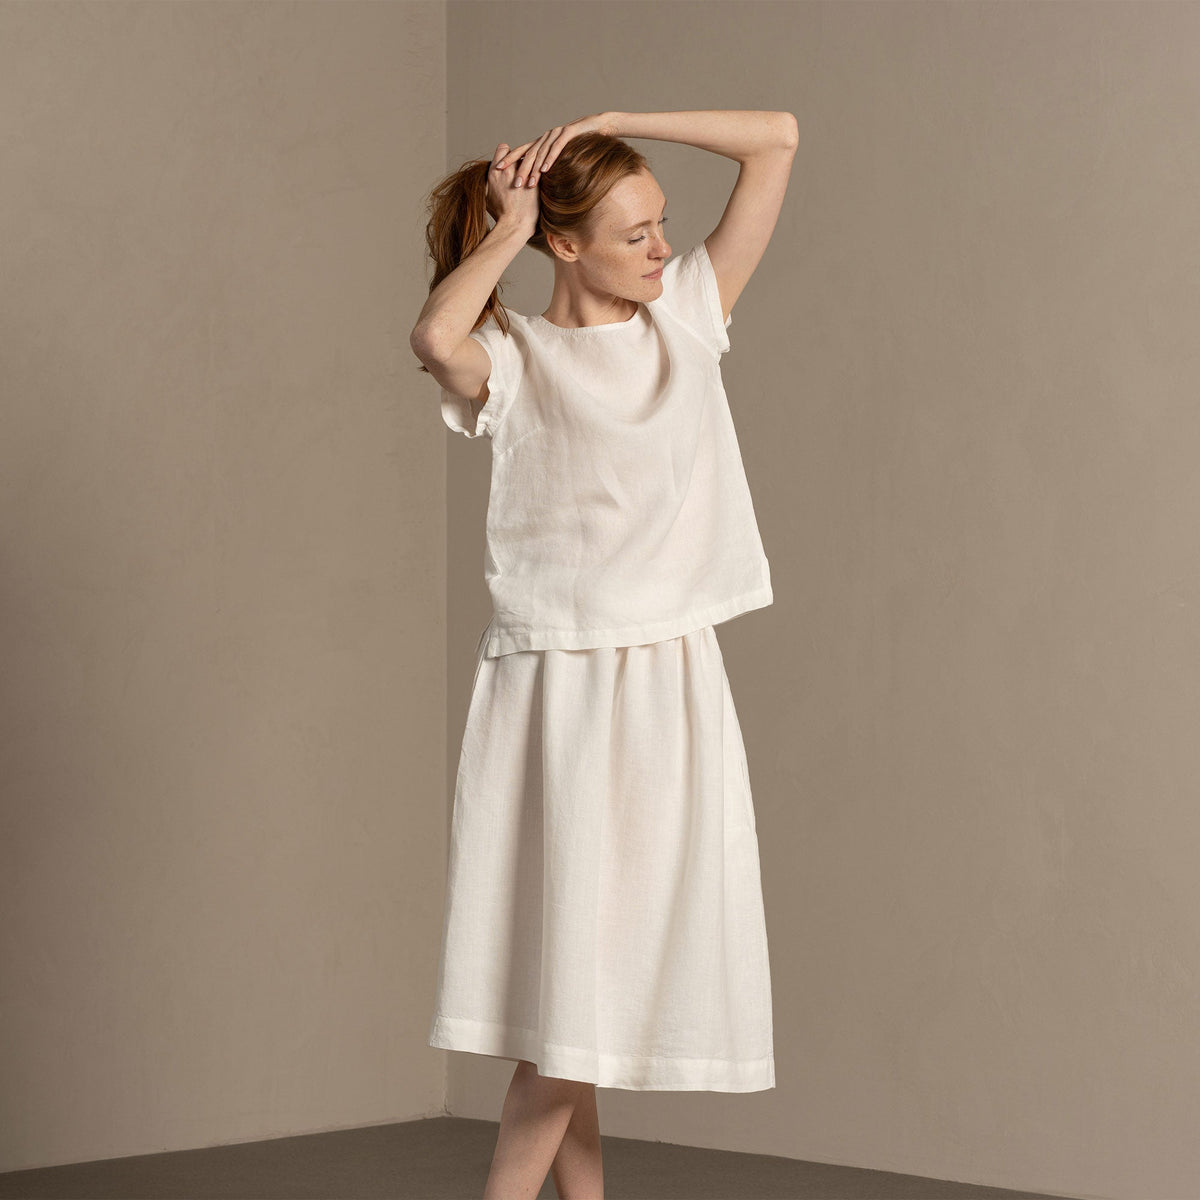 MENIQUE 100% Linen T-Shirt Top Emma Pure White